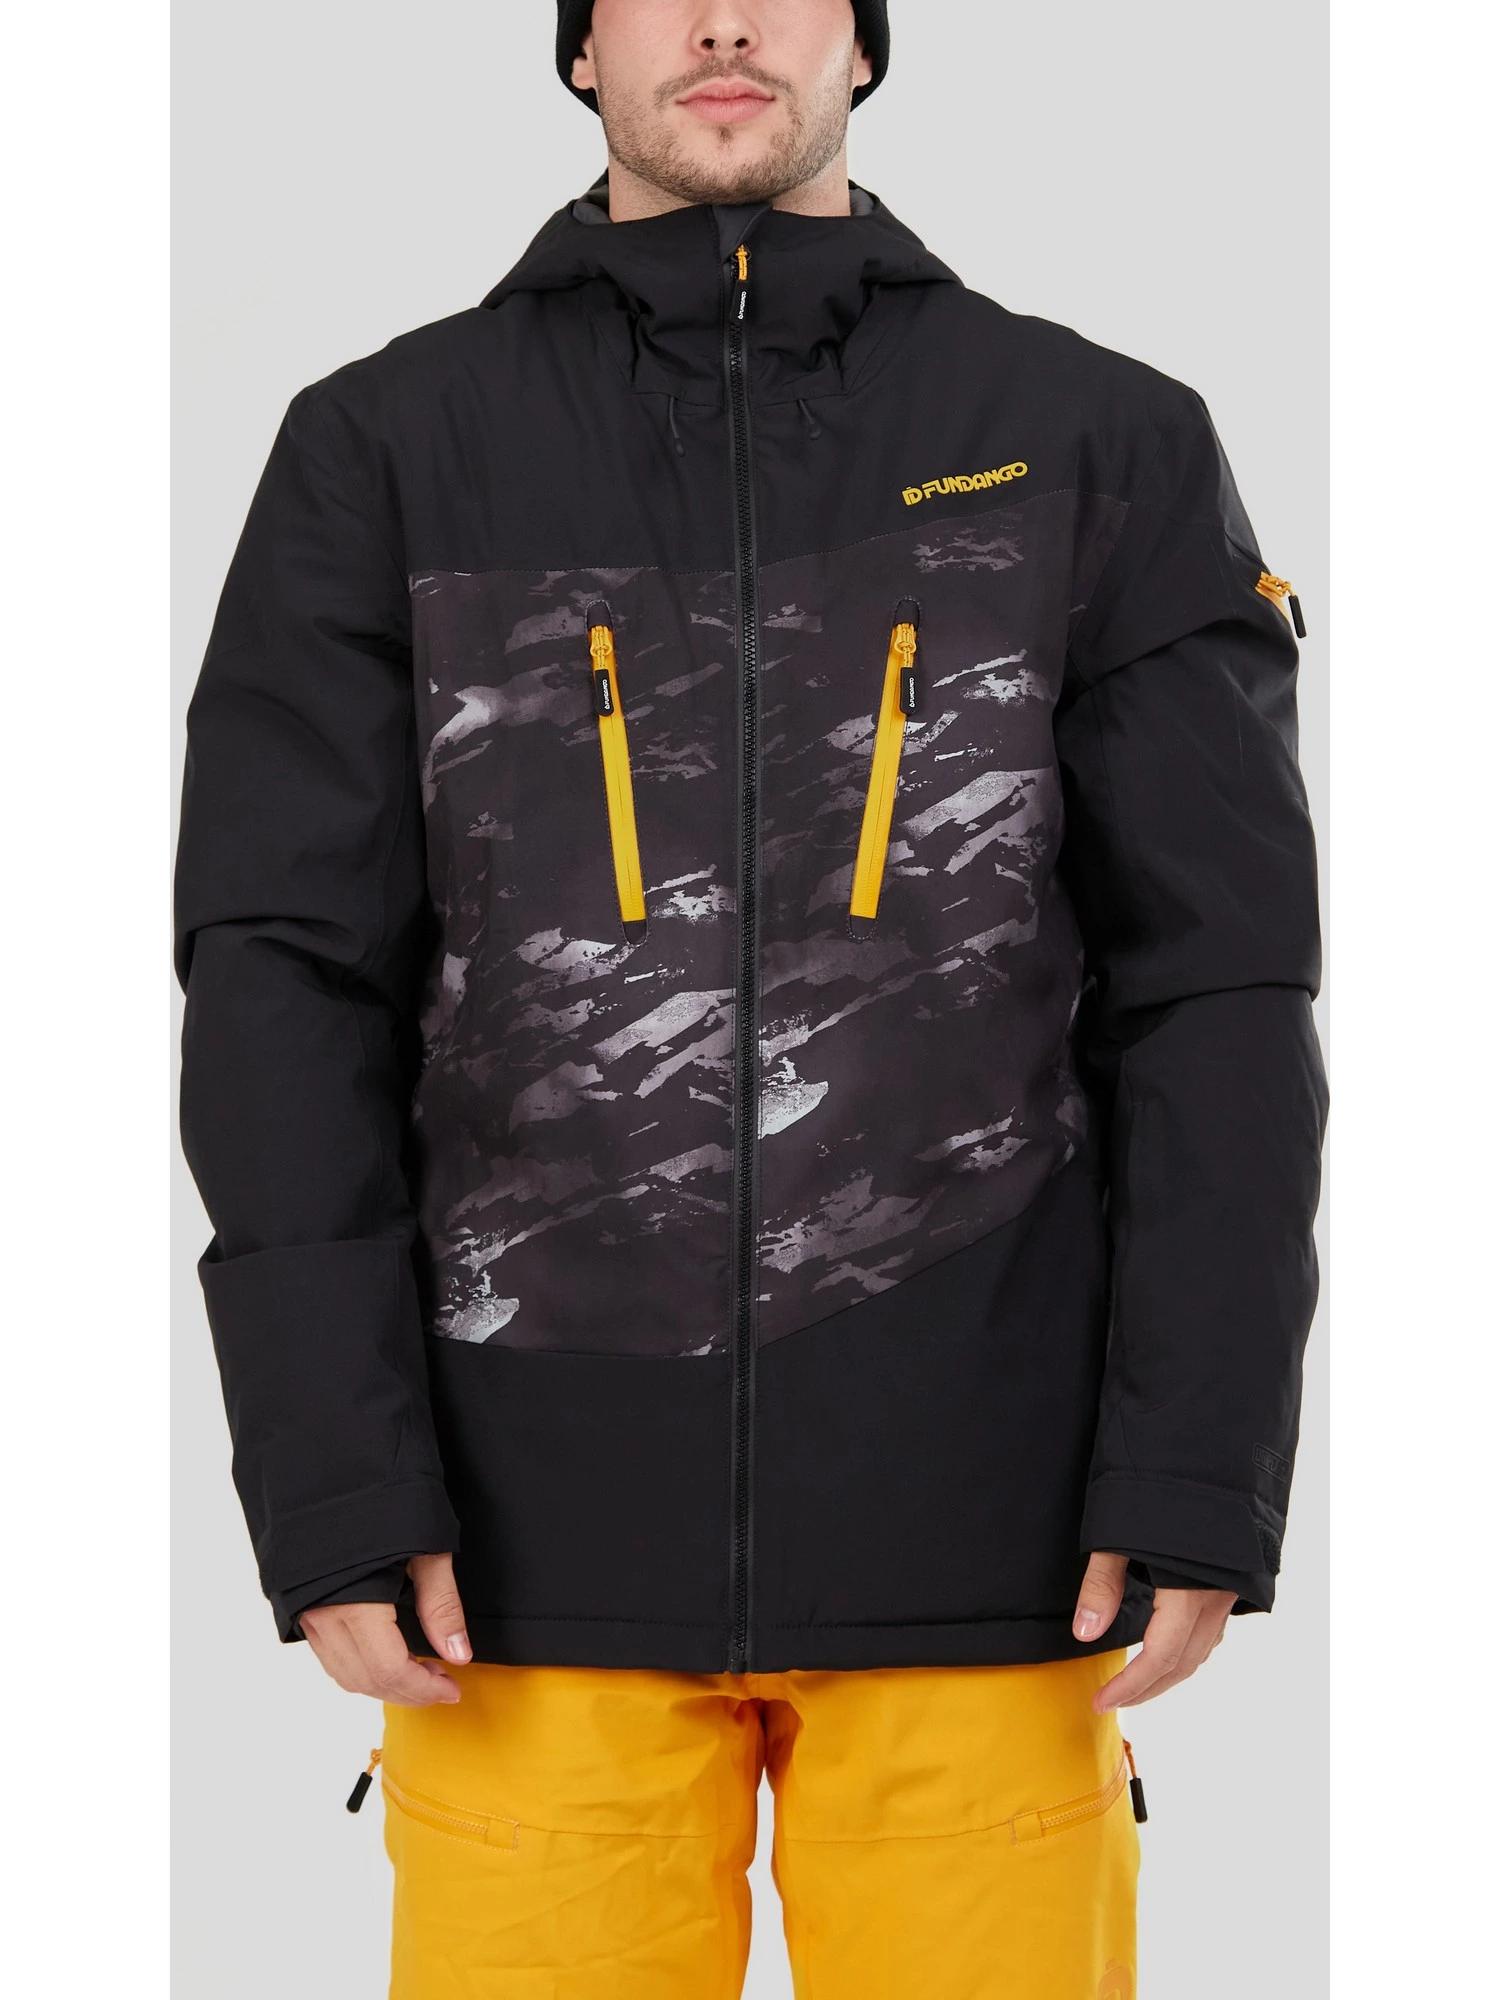 Куртка Fundango для мужчин, горнолыжная, размер S, 1QAD102, чёрная, камуфляж